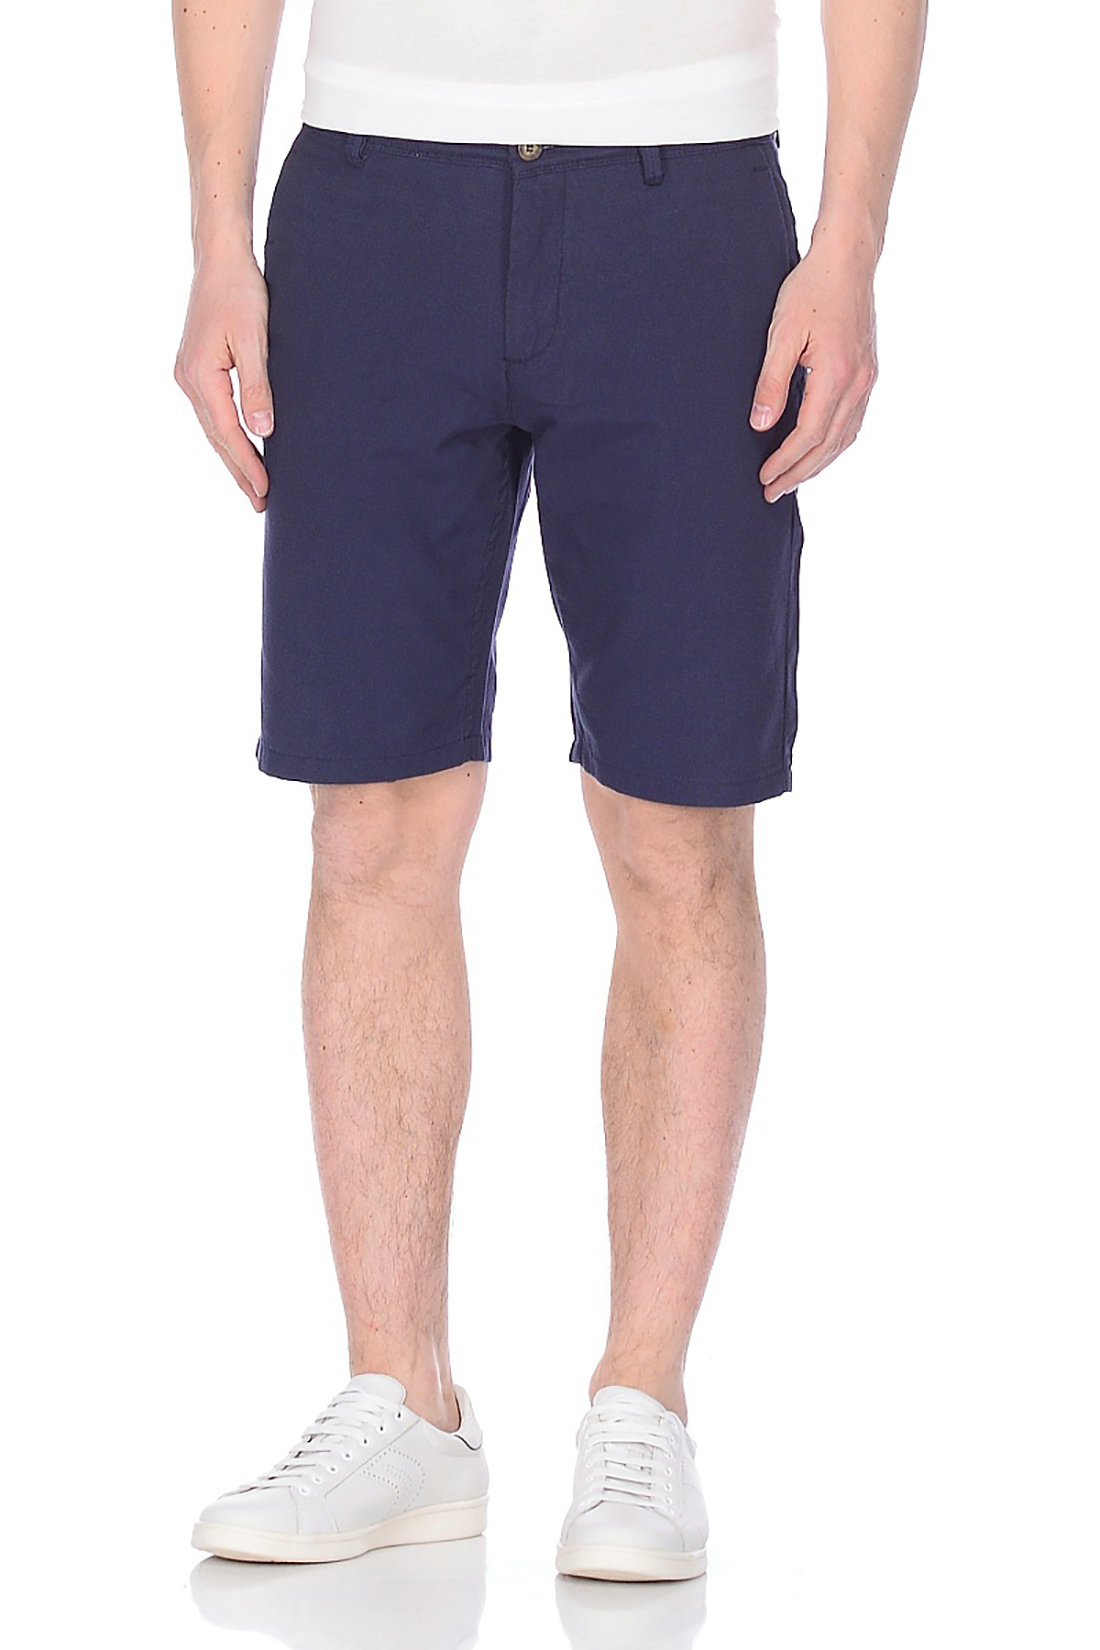 Хлопковые шорты с вытачками (арт. baon B828029), размер XXL, цвет синий Хлопковые шорты с вытачками (арт. baon B828029) - фото 1